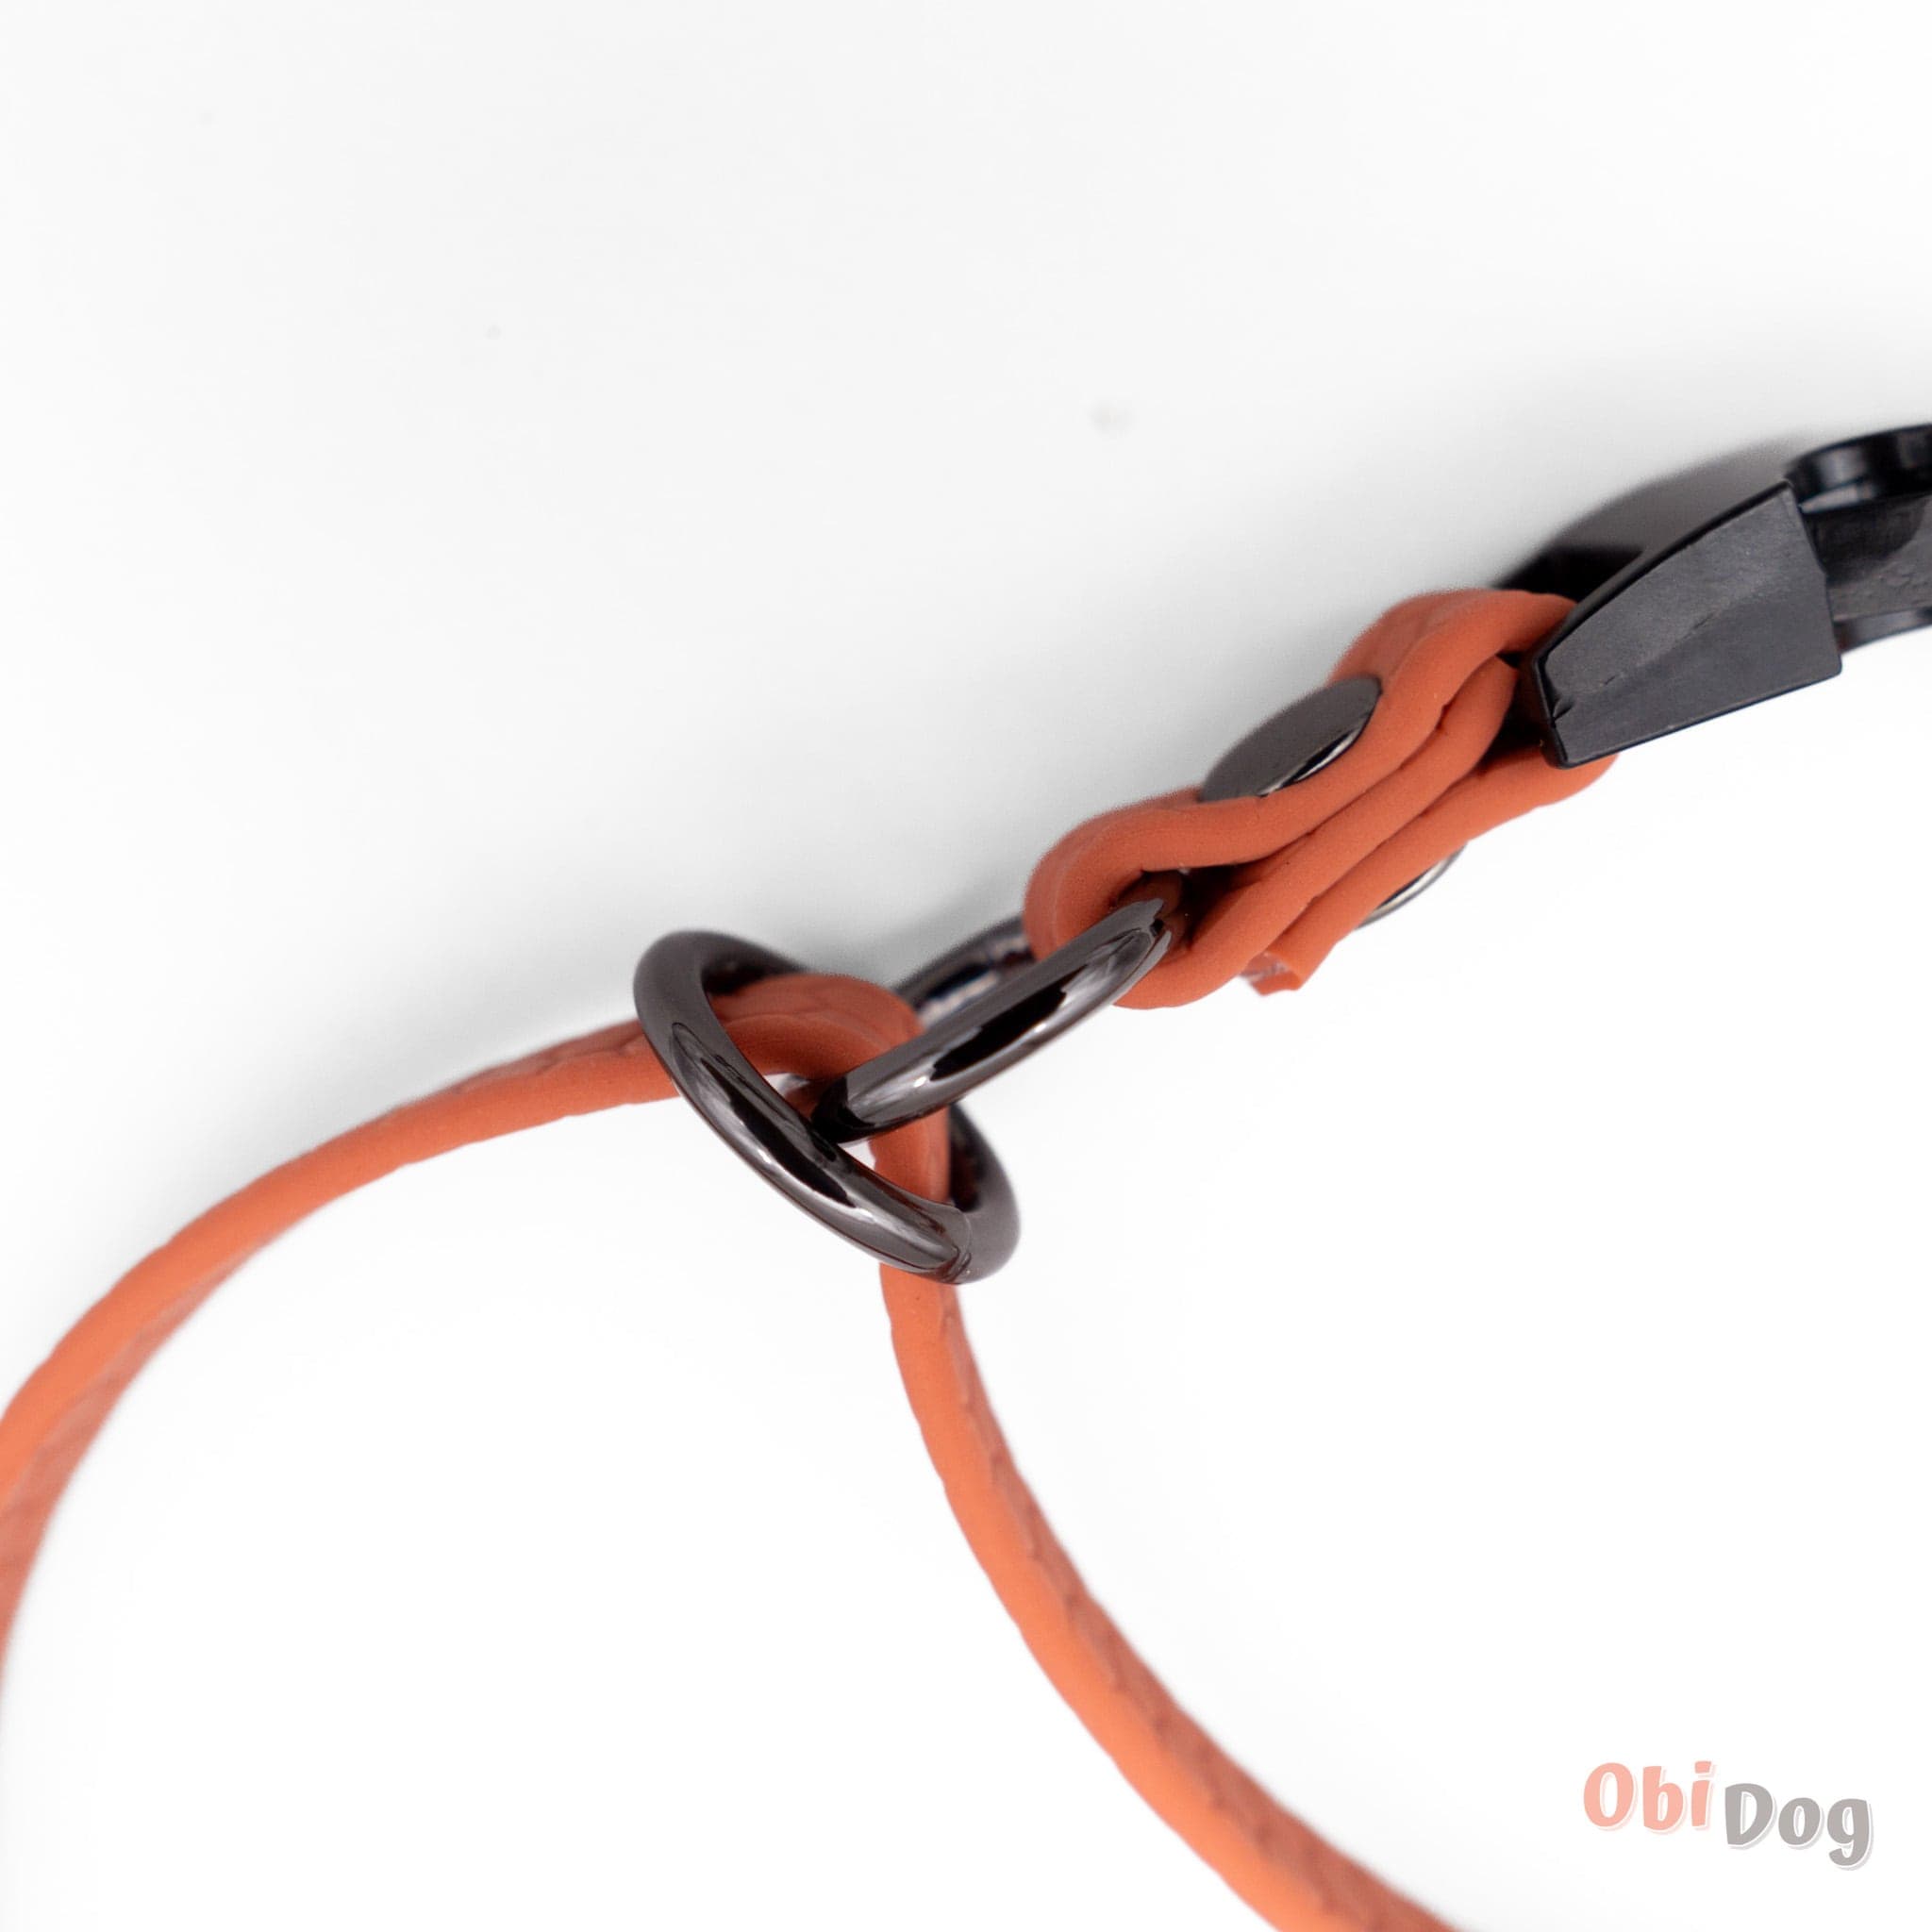 ObiDog, Hexa 5-vienā pavada suņiem - Persiku - ObiDog